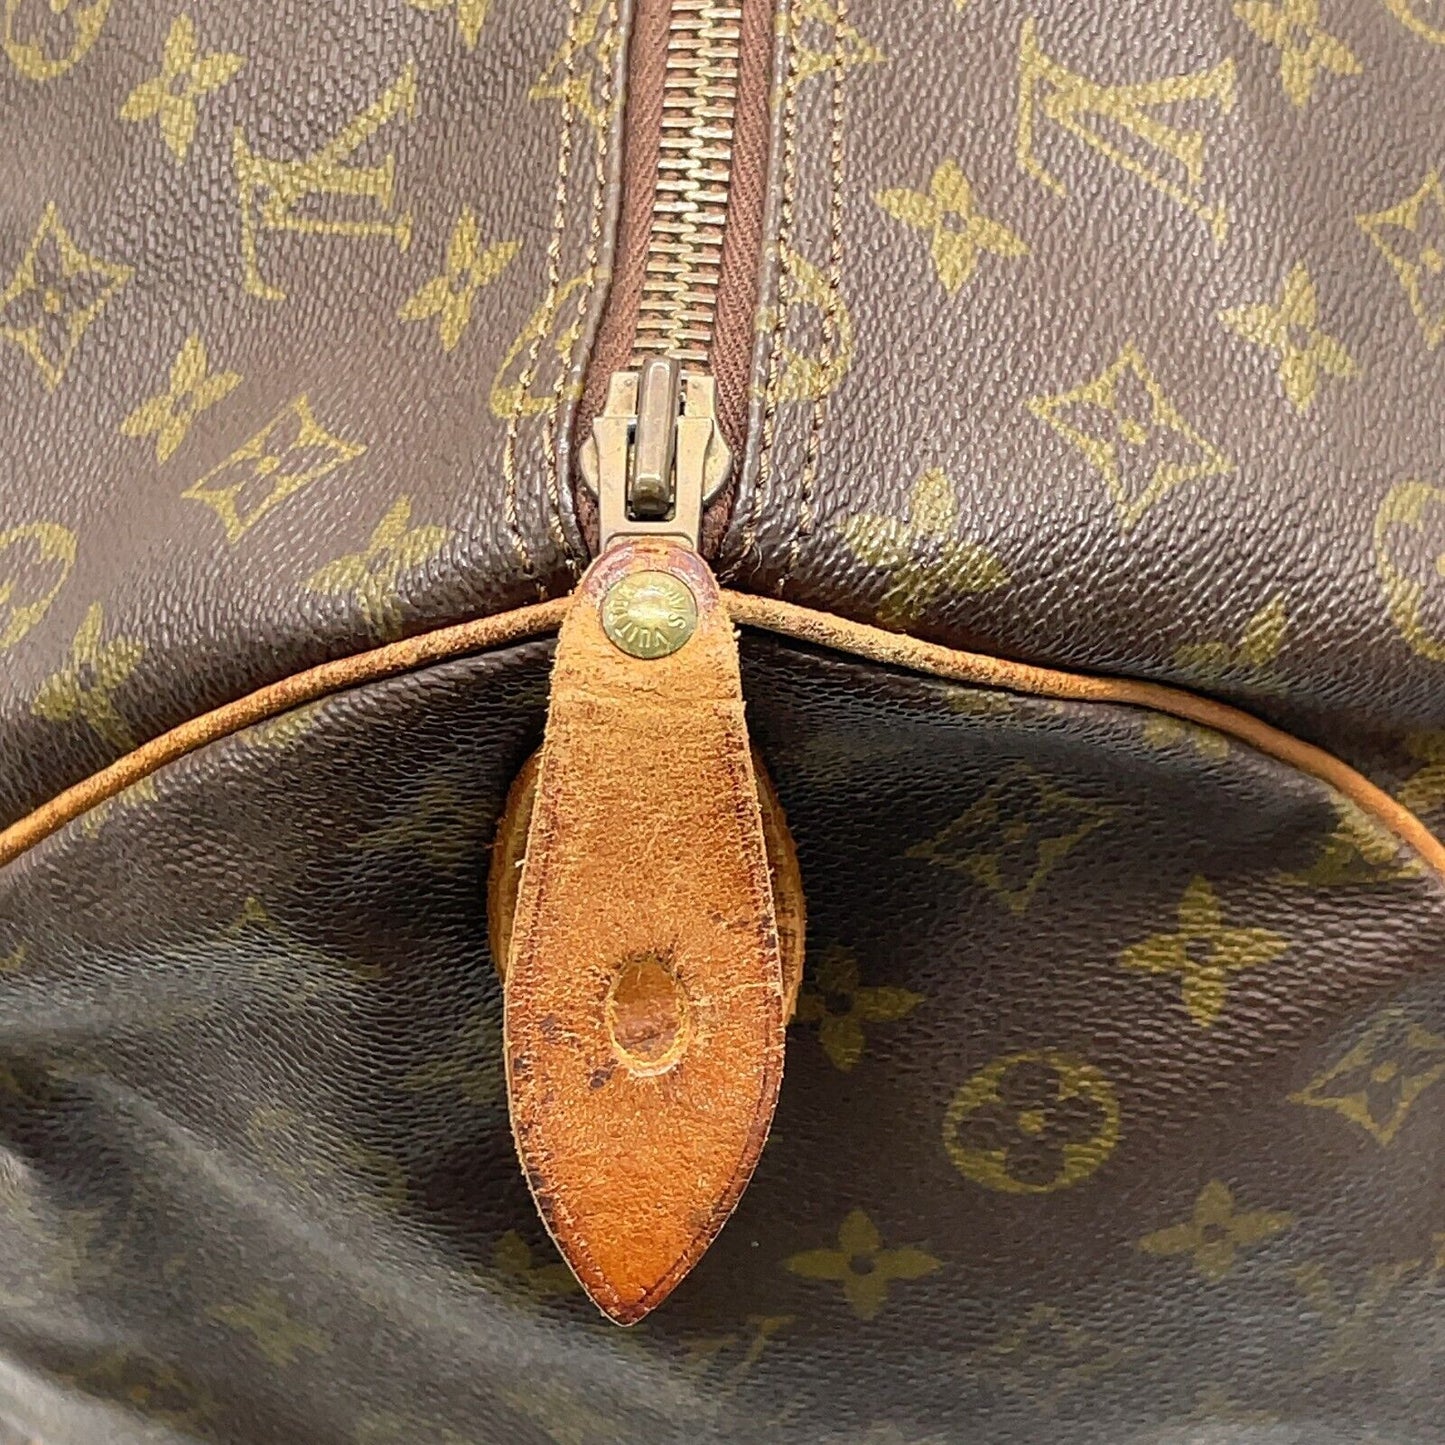 Original/Auth Louis Vuitton - Keepall 60 Boston Tasche - Klassisch - Monogramm